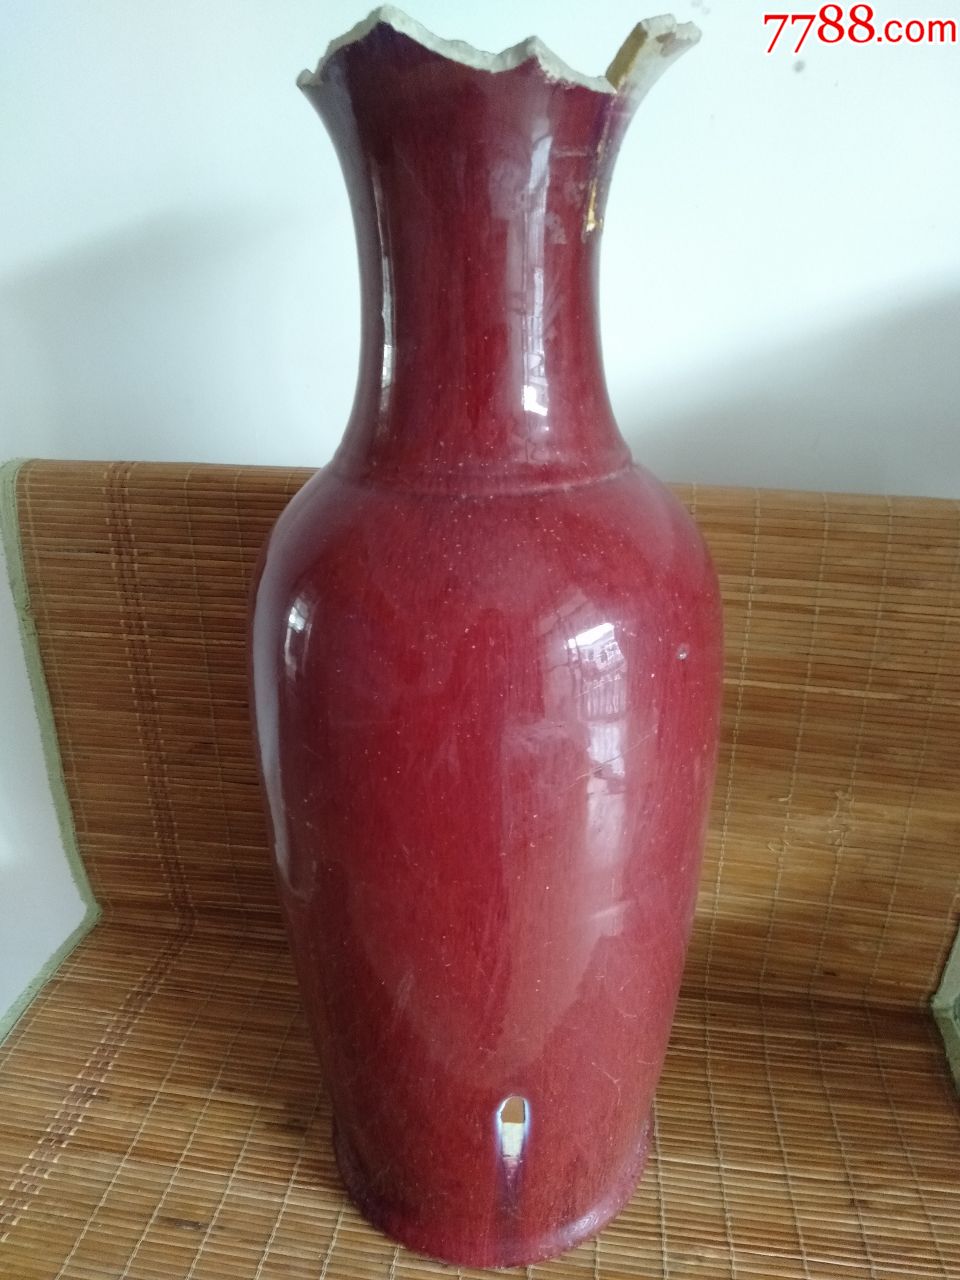 清代祭红釉大瓶